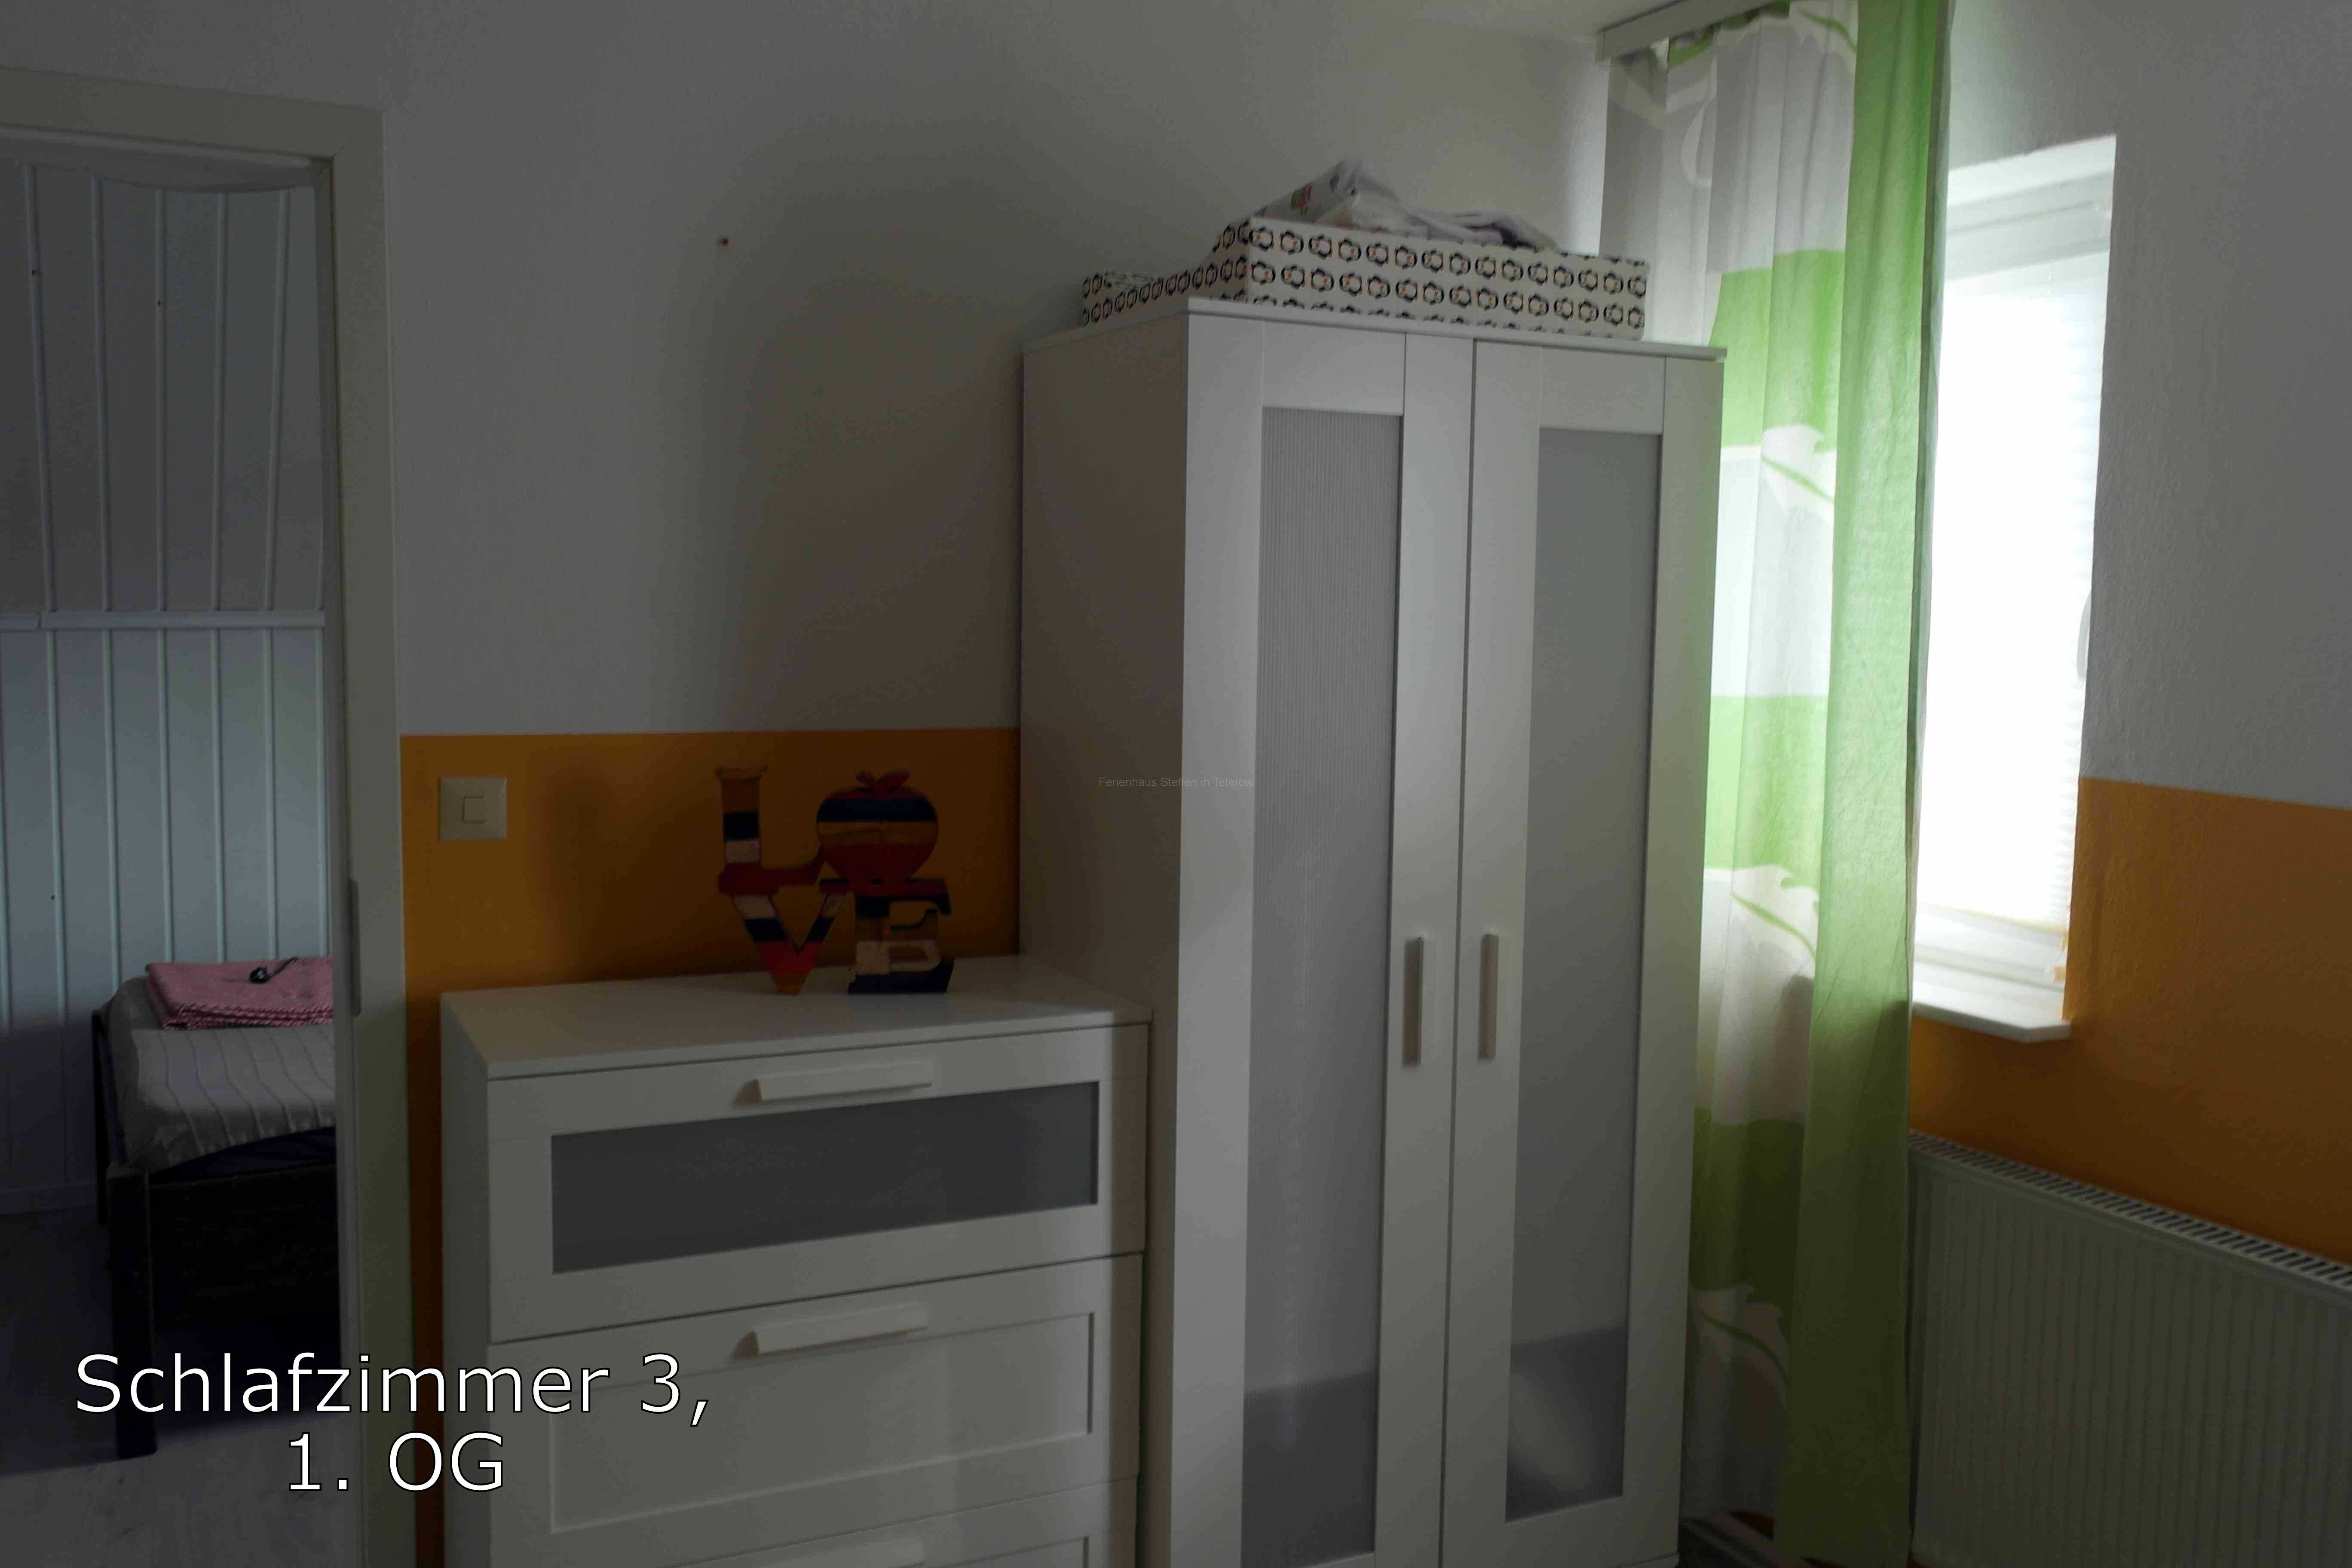 Schlafzimmer 3 im OG Schränke - Ferienhaus Steffen in Teterow.jpg